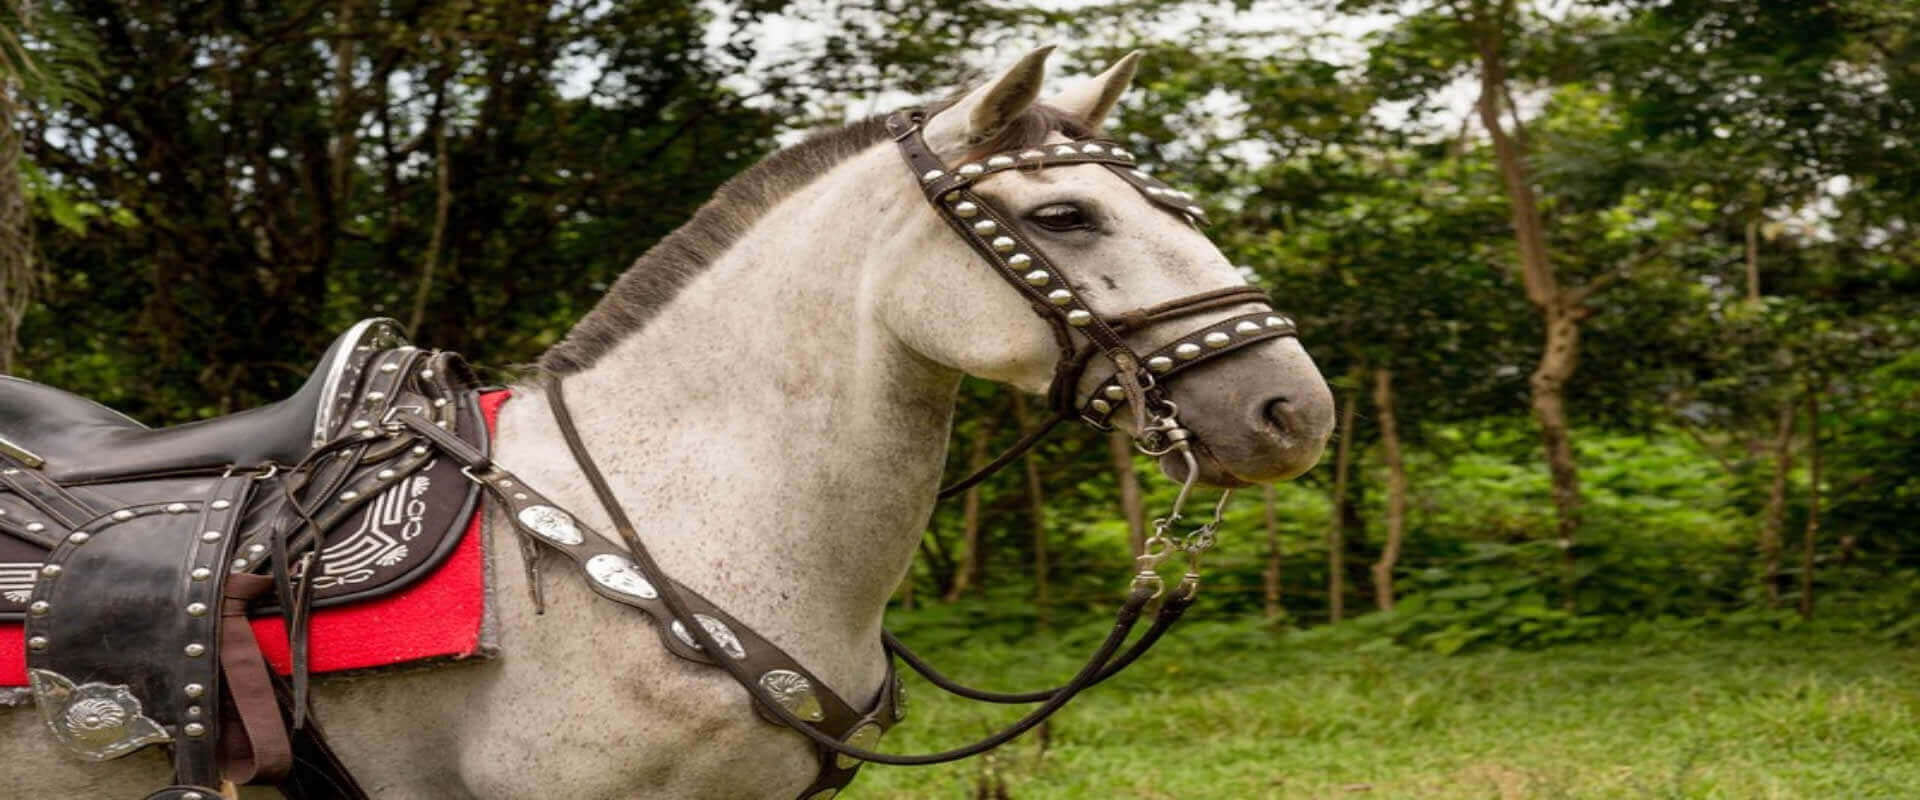 Horseback riding in Manuel Antonio | Costa Rica Jade Tours